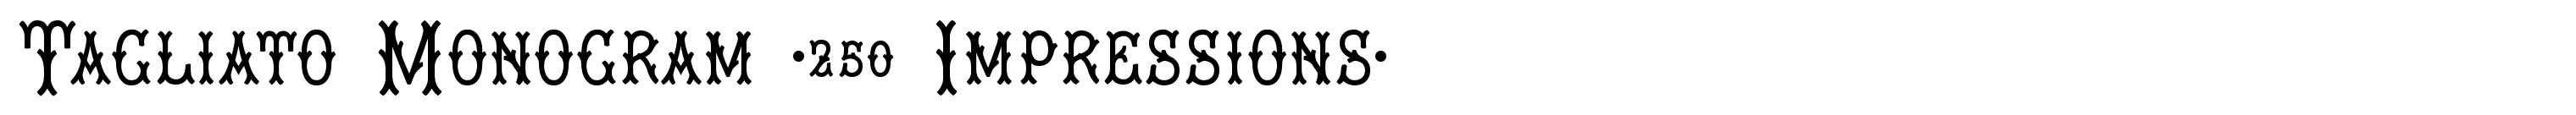 Tagliato Monogram (250 Impressions)